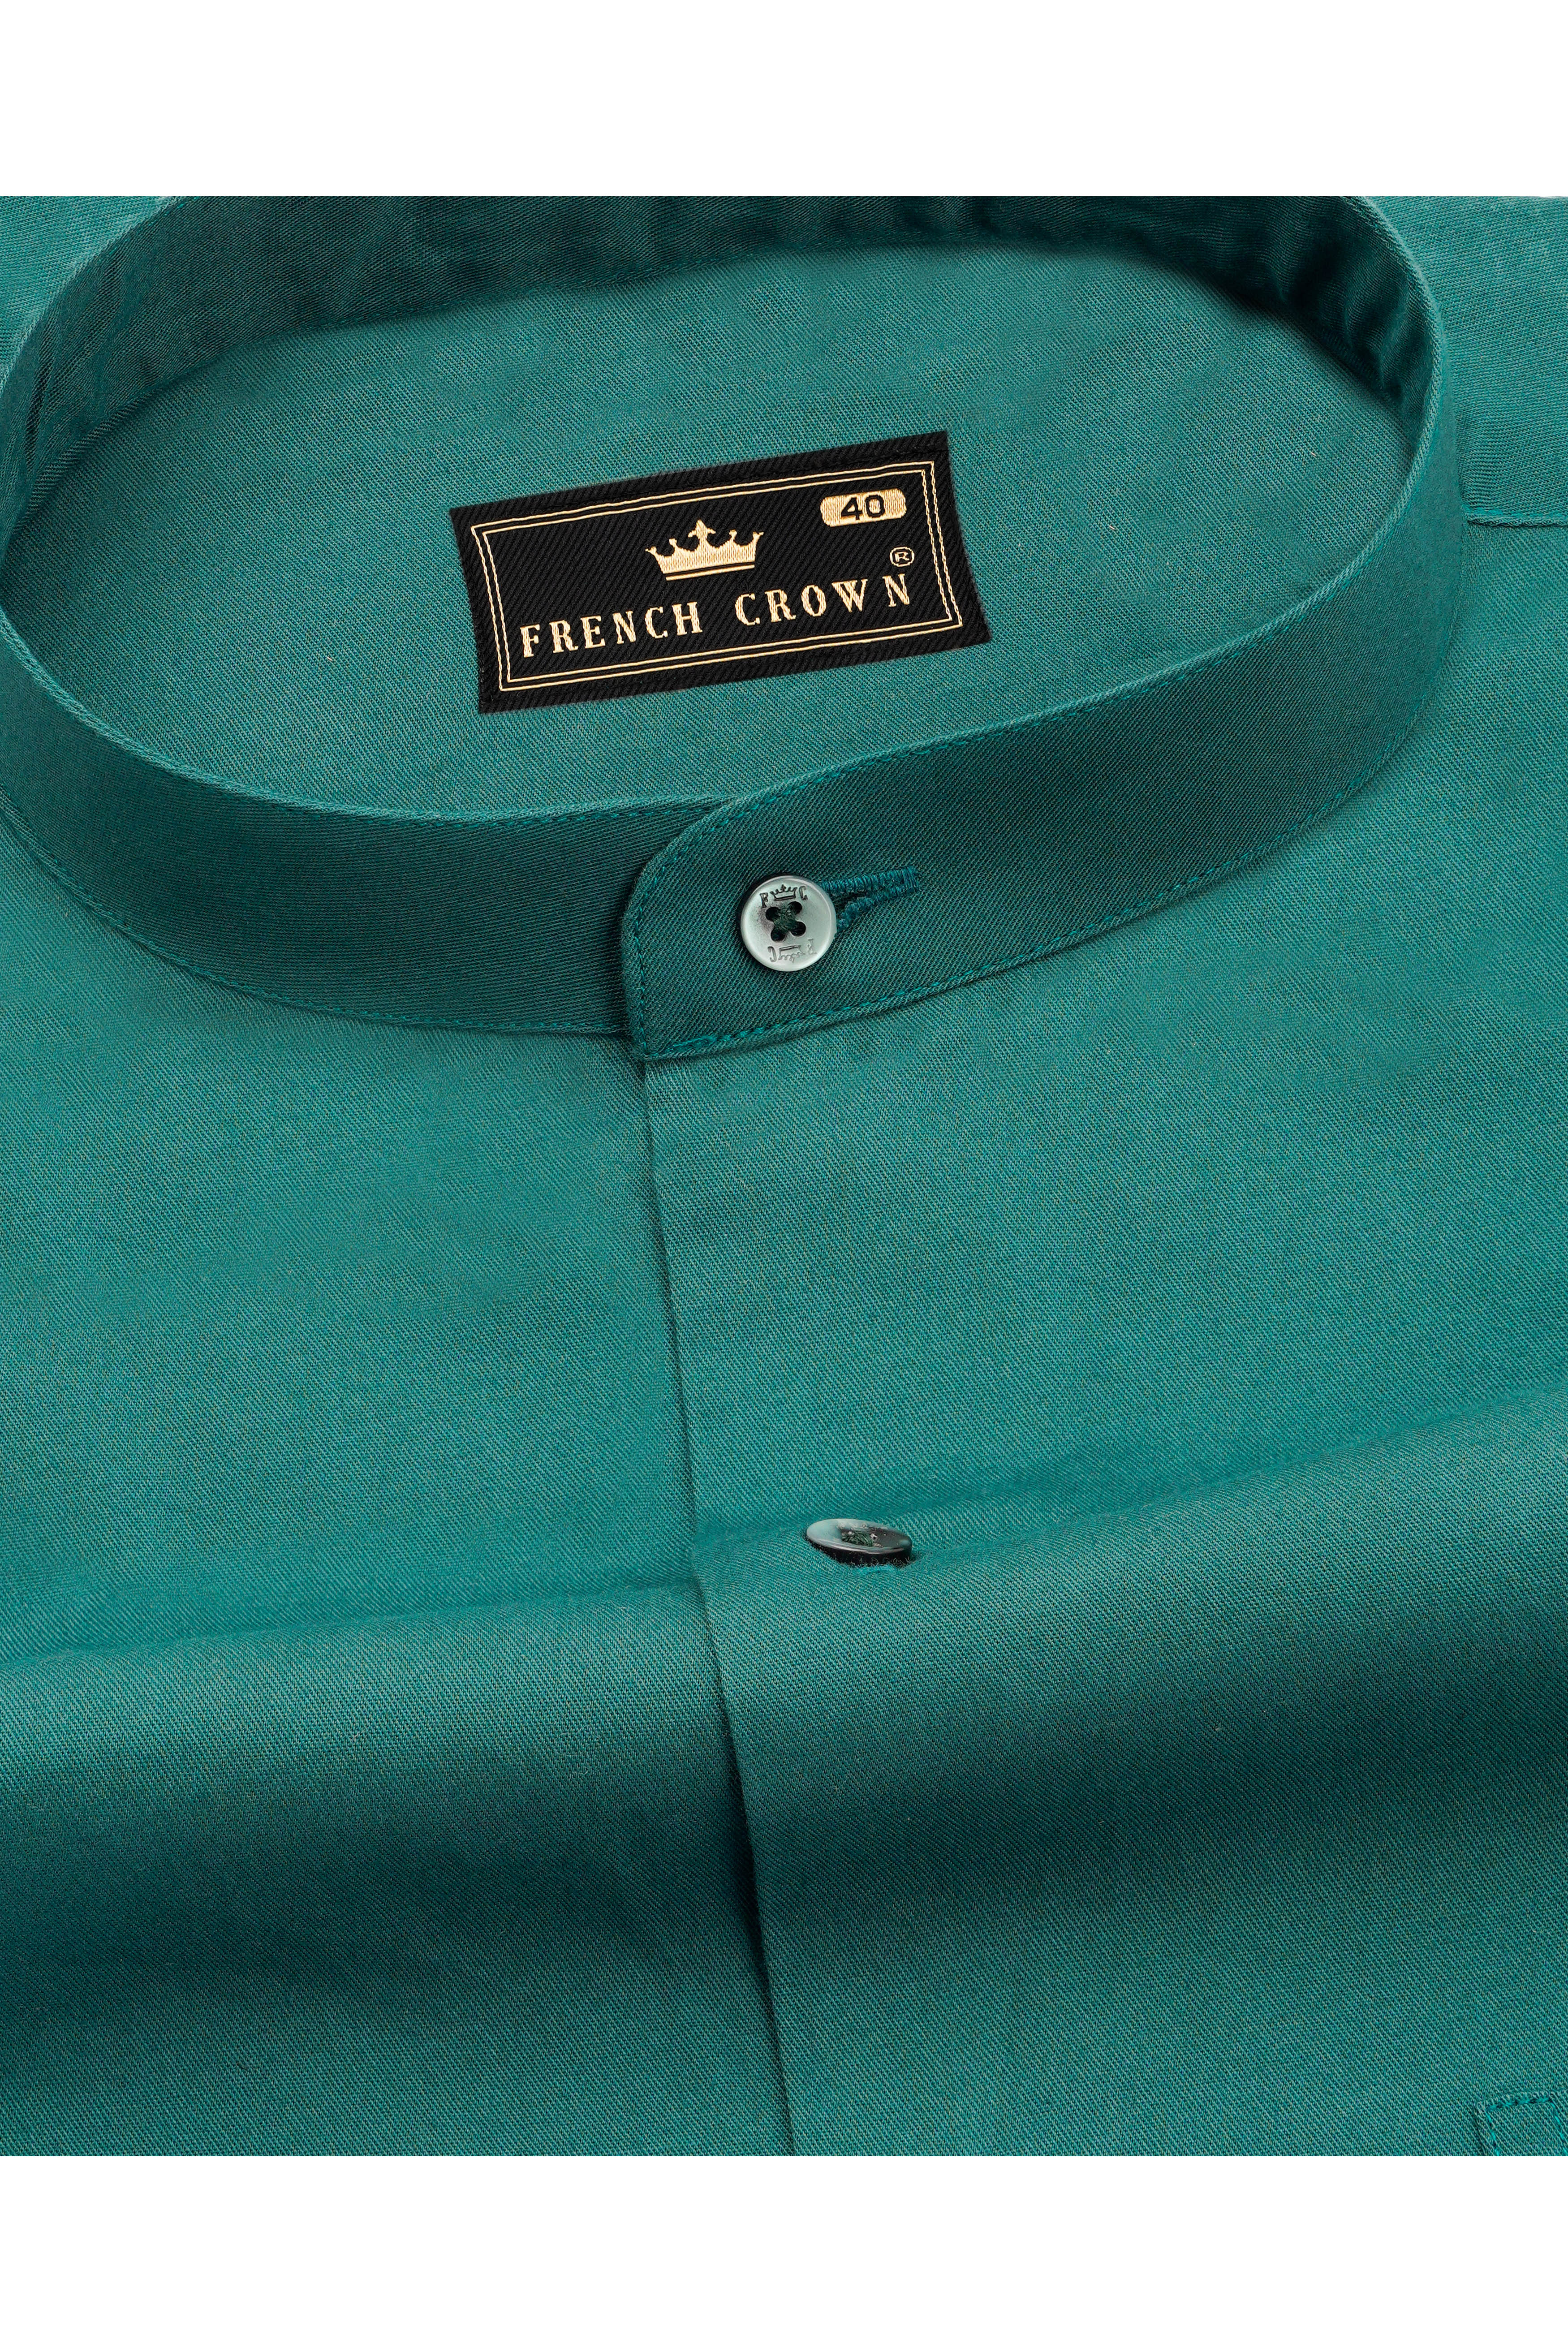 Casal Green Royal Oxford Shirt